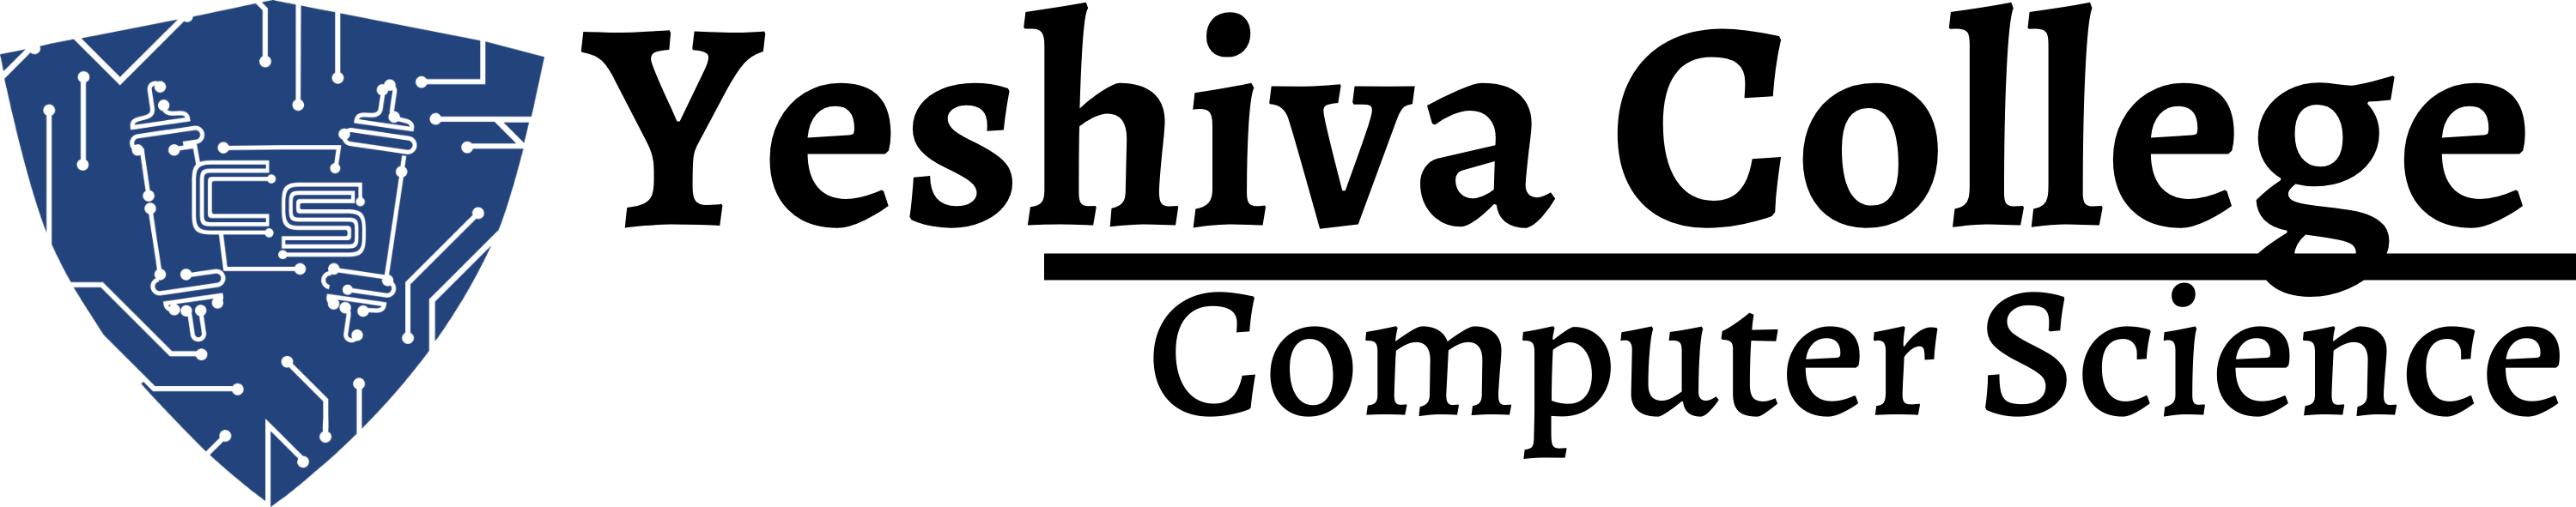 Computer Science | Yeshiva College Logo